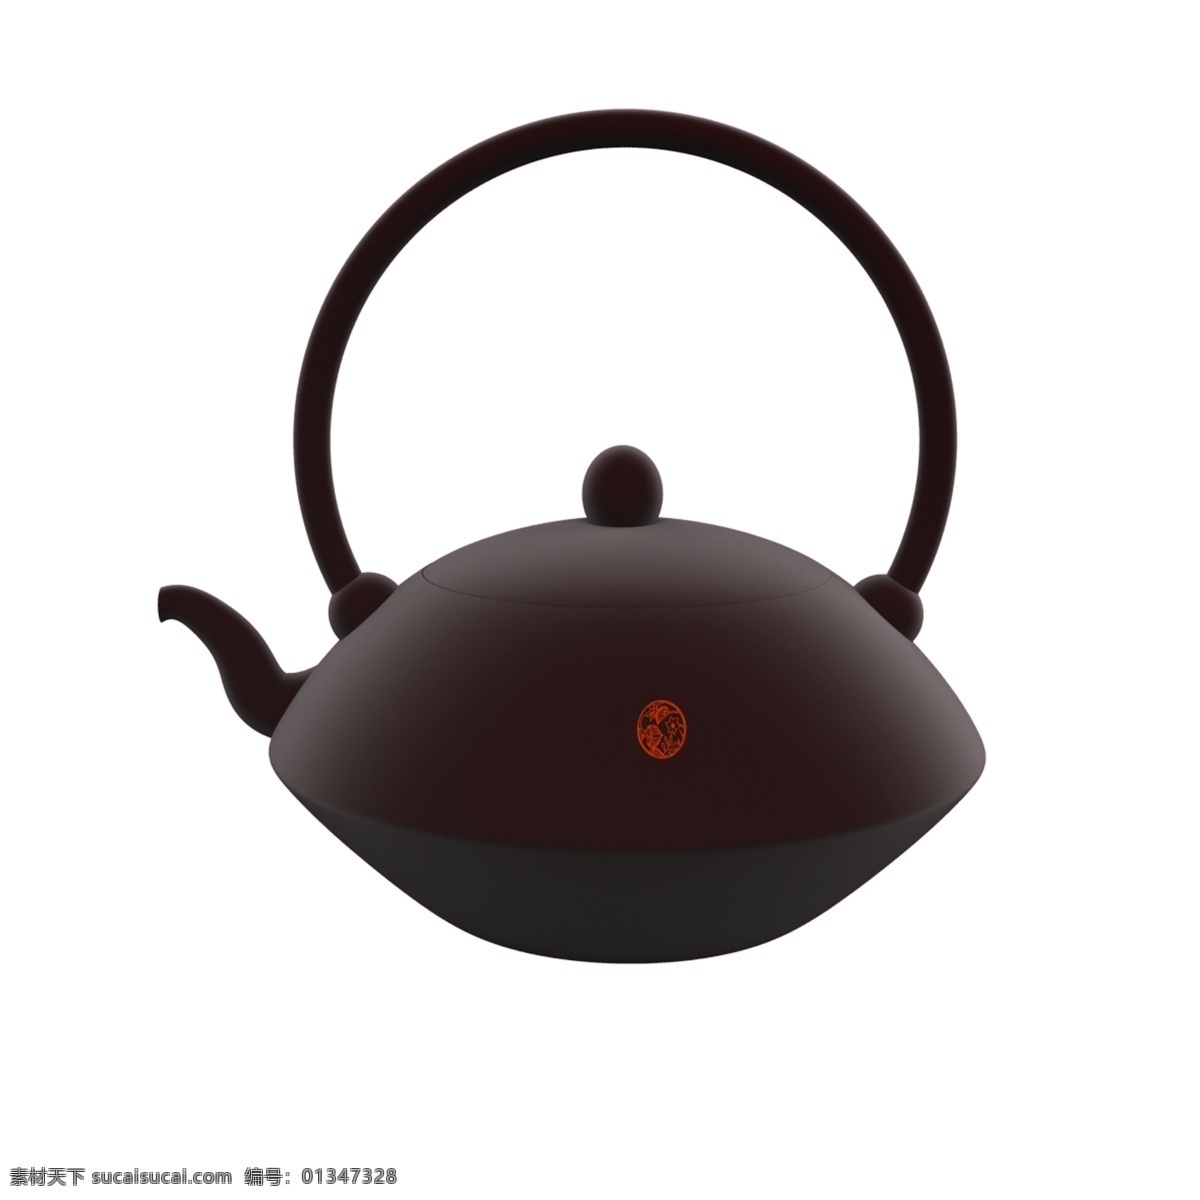 紫砂壶 免 抠 图案 茶壶 小茶壶 精致的茶壶 瓷器 陶器 红色的茶壶 紫砂茶具 喝茶 茶叶 养生 泡茶 茶文化